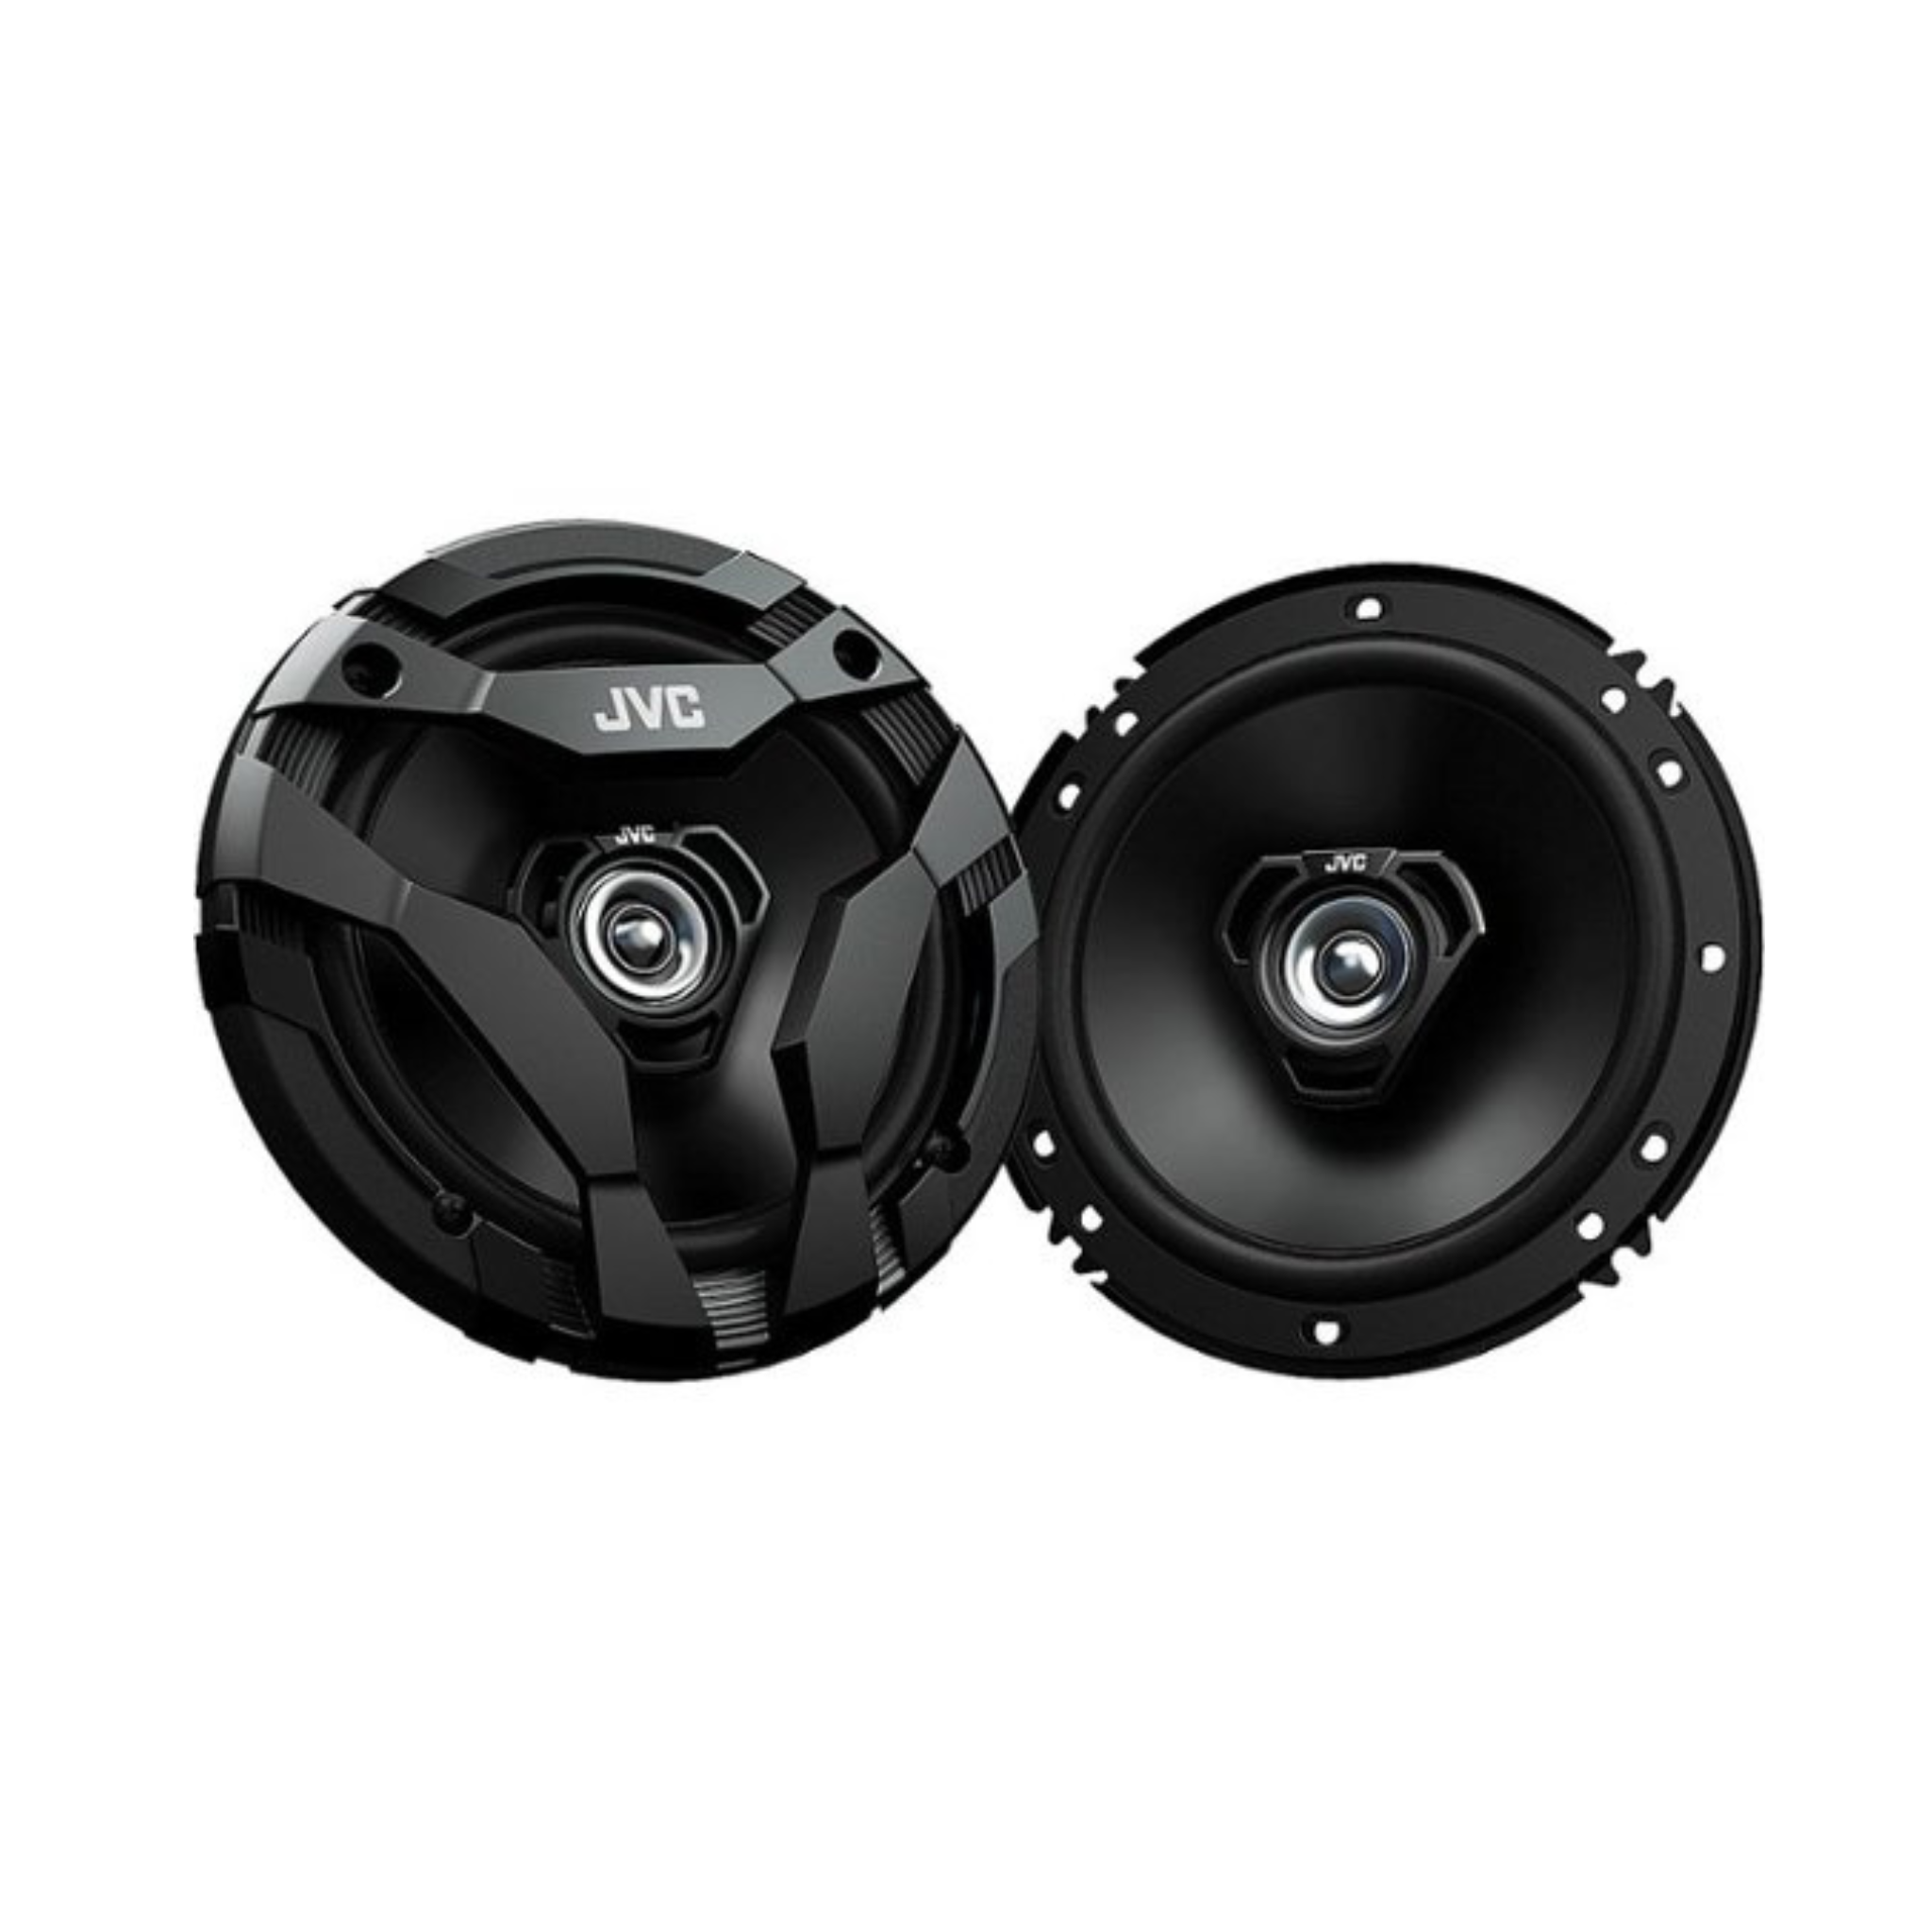 Jvc Drvn DF Series 6.5" 2-way Speakers Pair